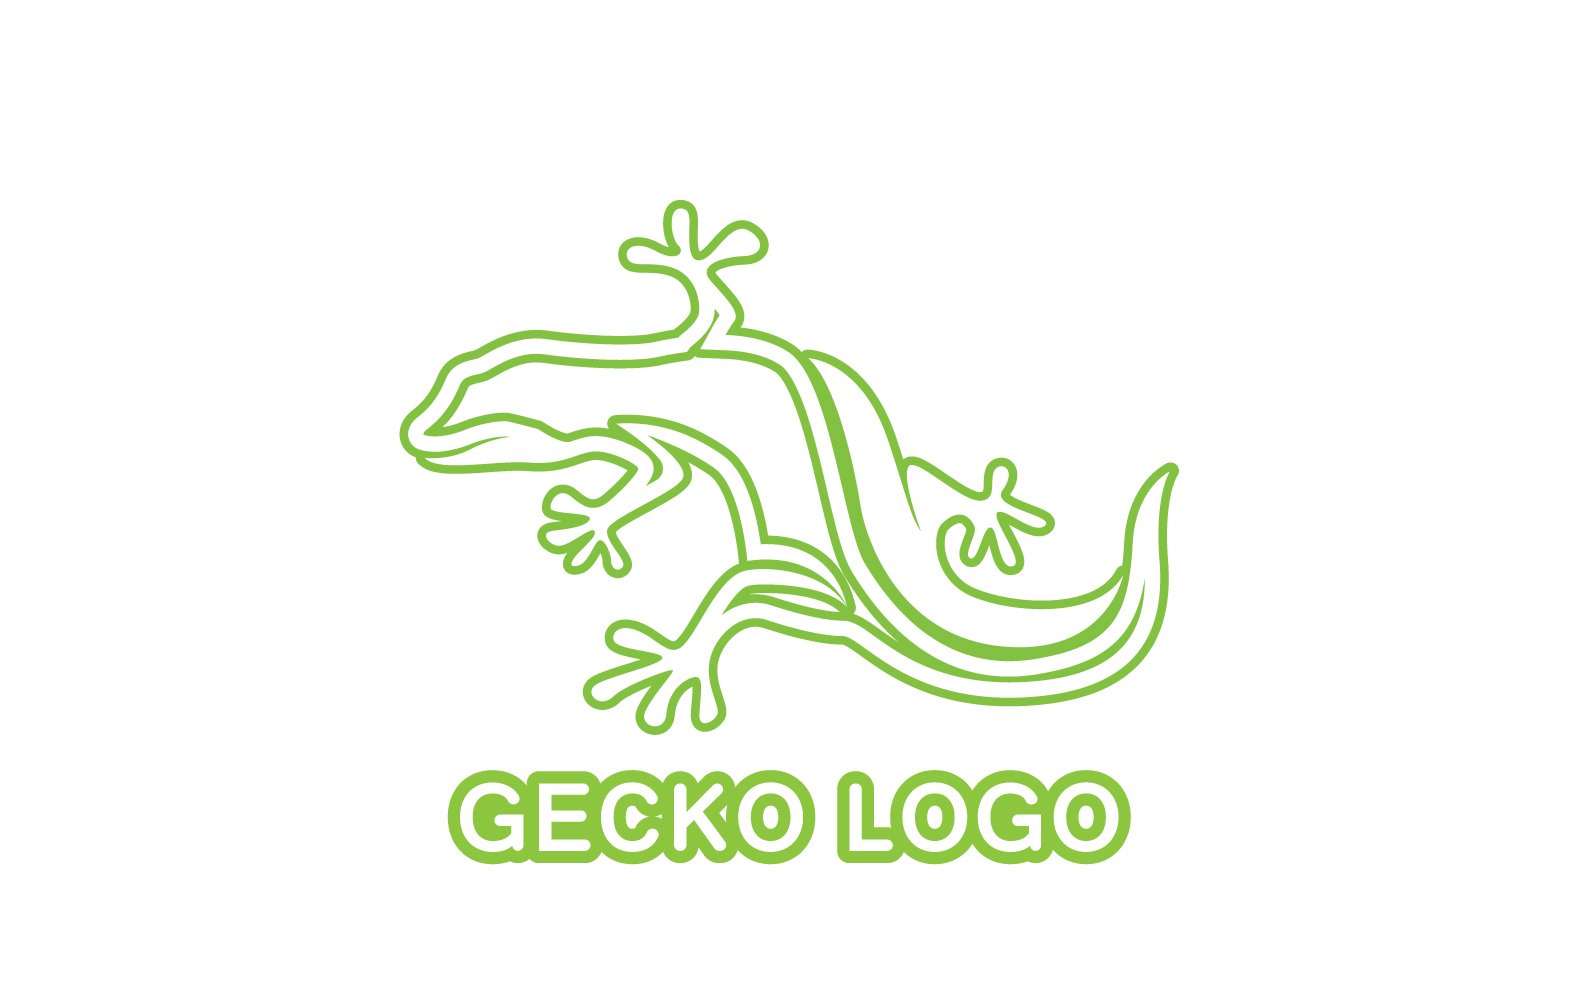 Kit Graphique #324527 Logo Gecko Divers Modles Web - Logo template Preview